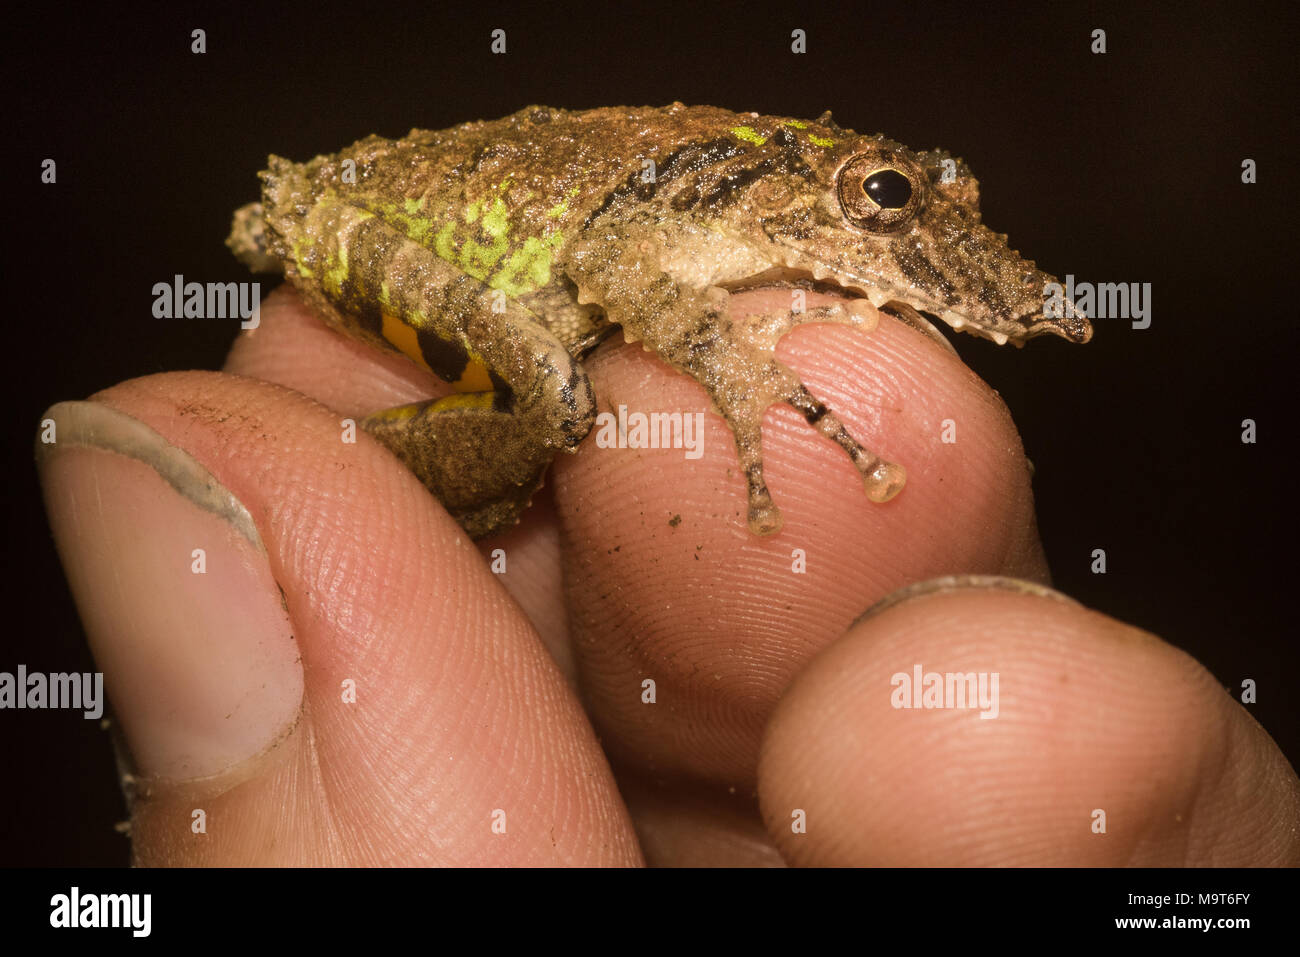 Eine snouted Laubfrosch (Scinax garbei) wird durch ein Herpetologist statt. Eine Nahaufnahme Foto der Frosch und Finger. Stockfoto